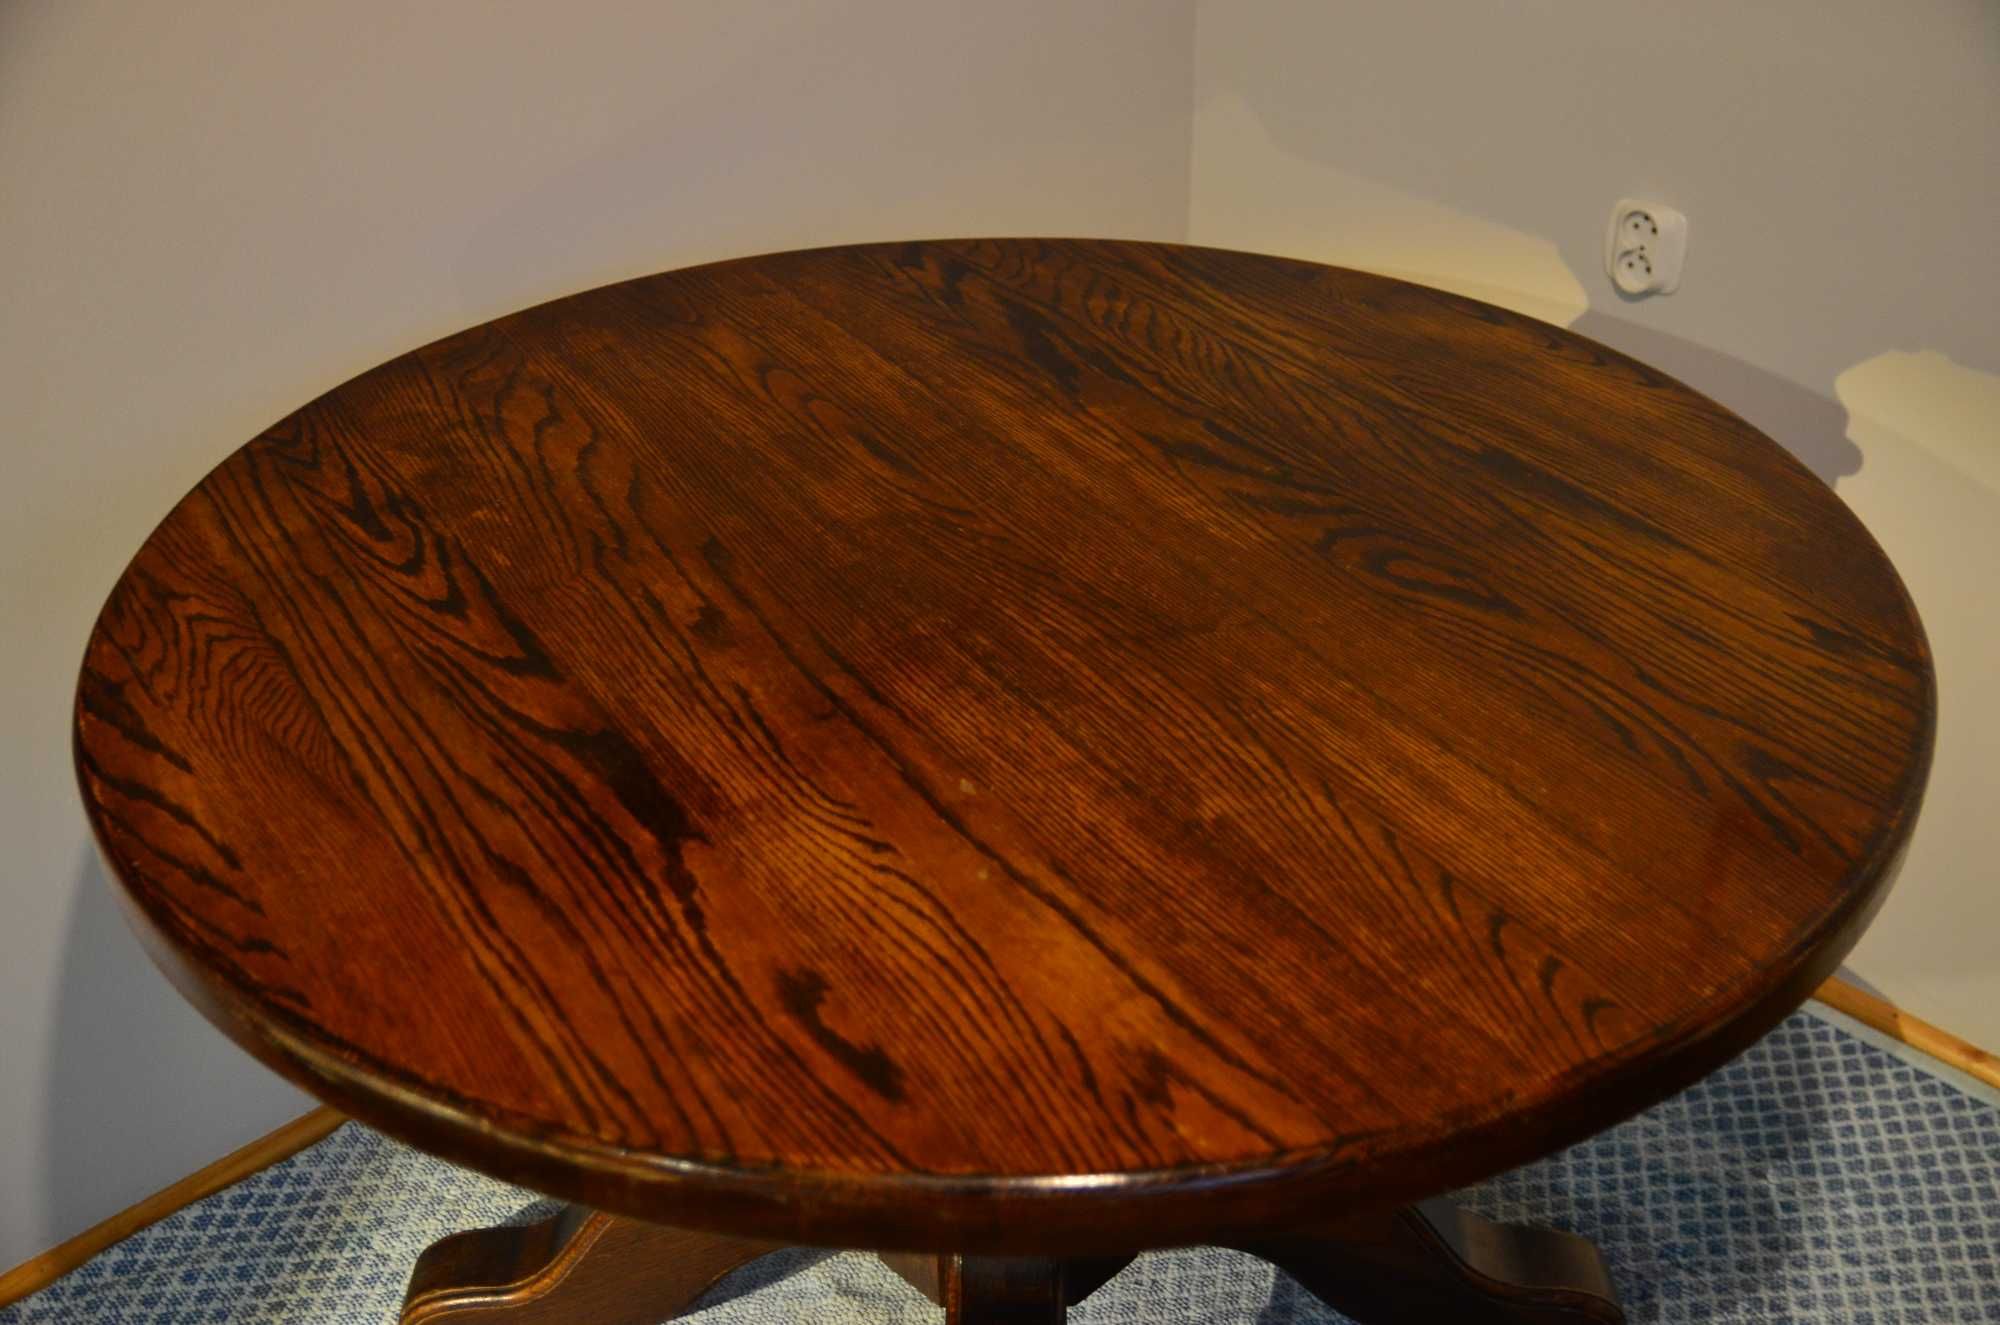 Drewniany okrągły duży stół. Lite drewno dębowe